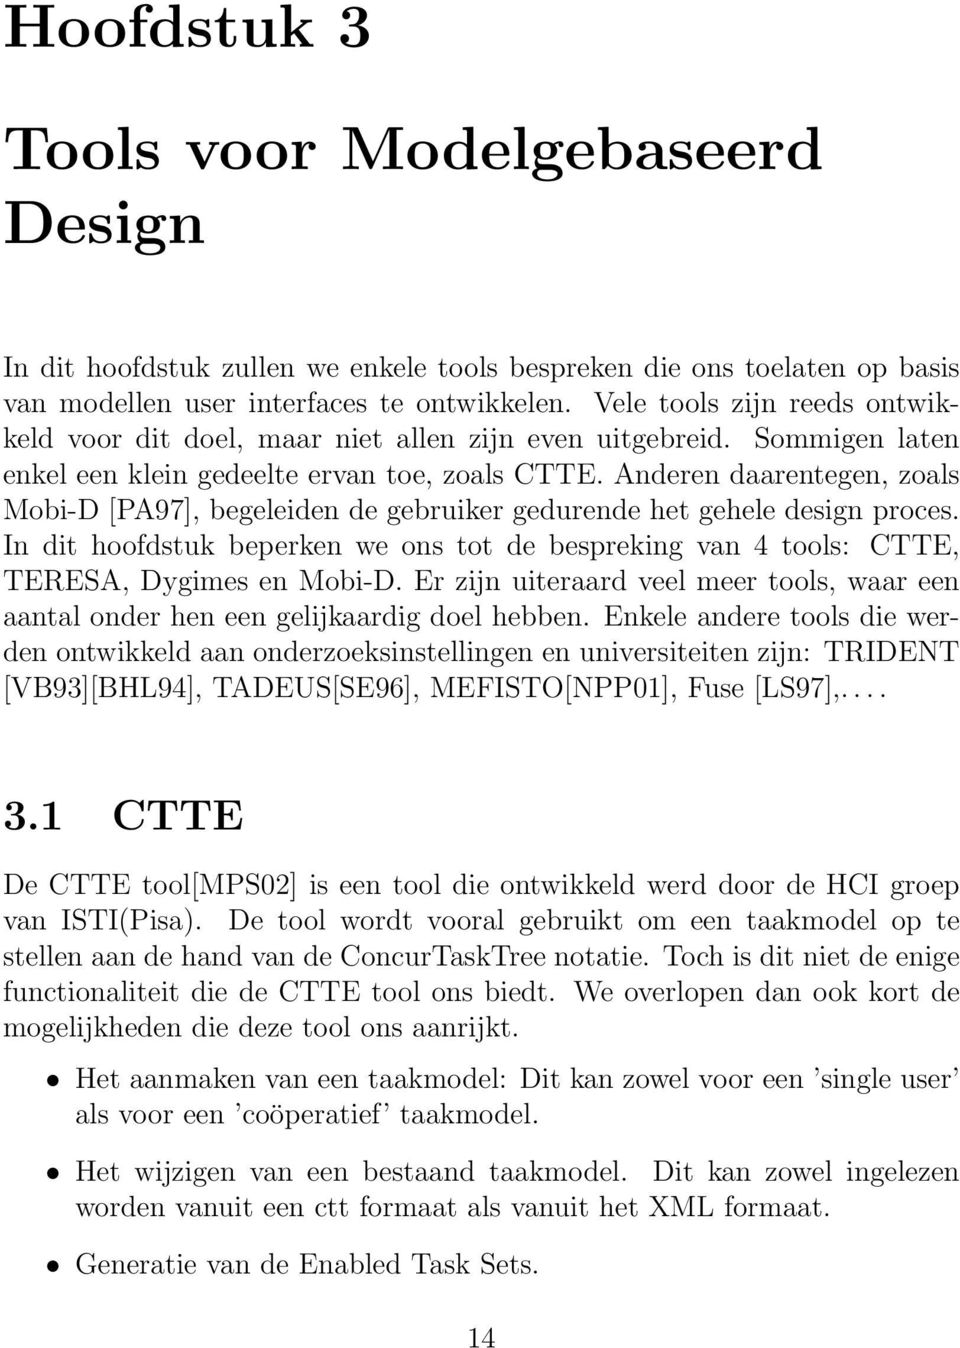 Anderen daarentegen, zoals Mobi-D [PA97], begeleiden de gebruiker gedurende het gehele design proces. In dit hoofdstuk beperken we ons tot de bespreking van 4 tools: CTTE, TERESA, Dygimes en Mobi-D.